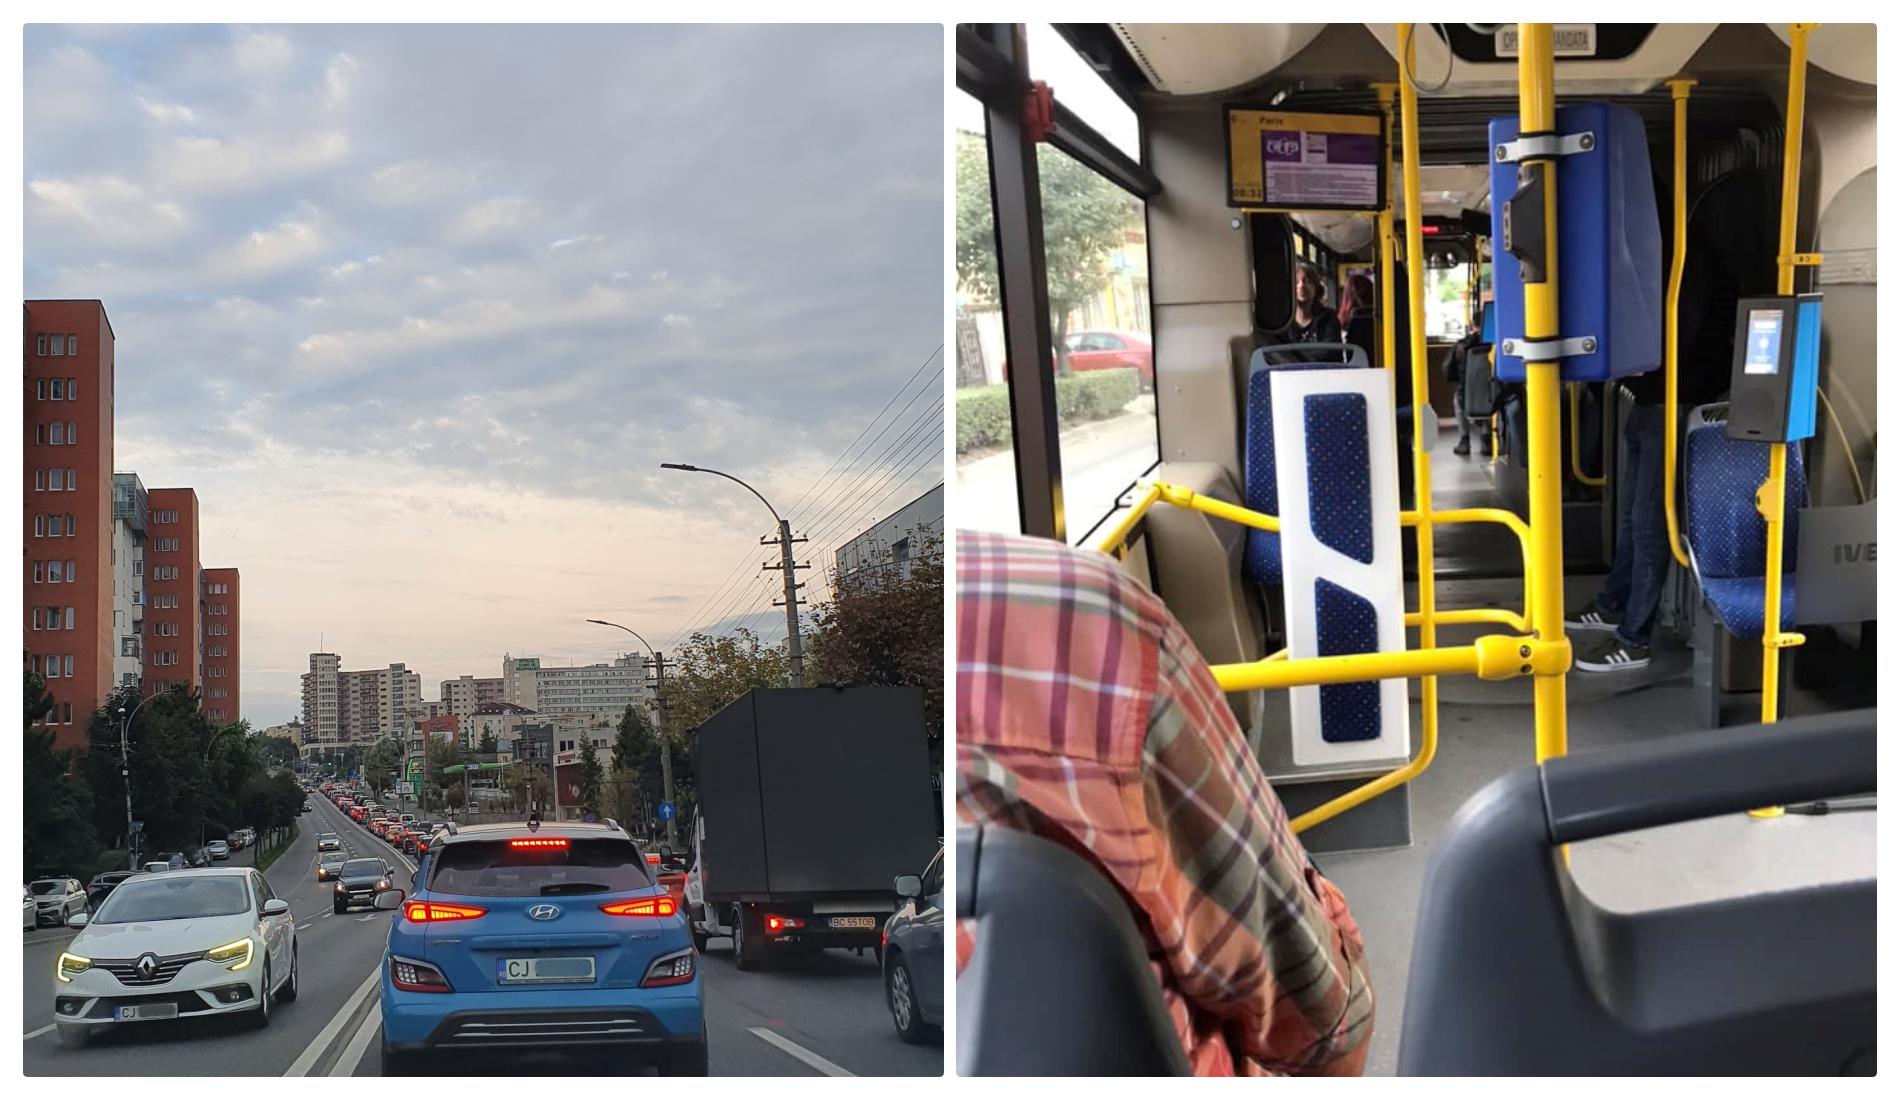 Clujeancă: ”Mulțumim domnului Boc pentru condițiile minunate de a circula” / Replică: ”Mai sunt locuri în autobuz” - FOTO